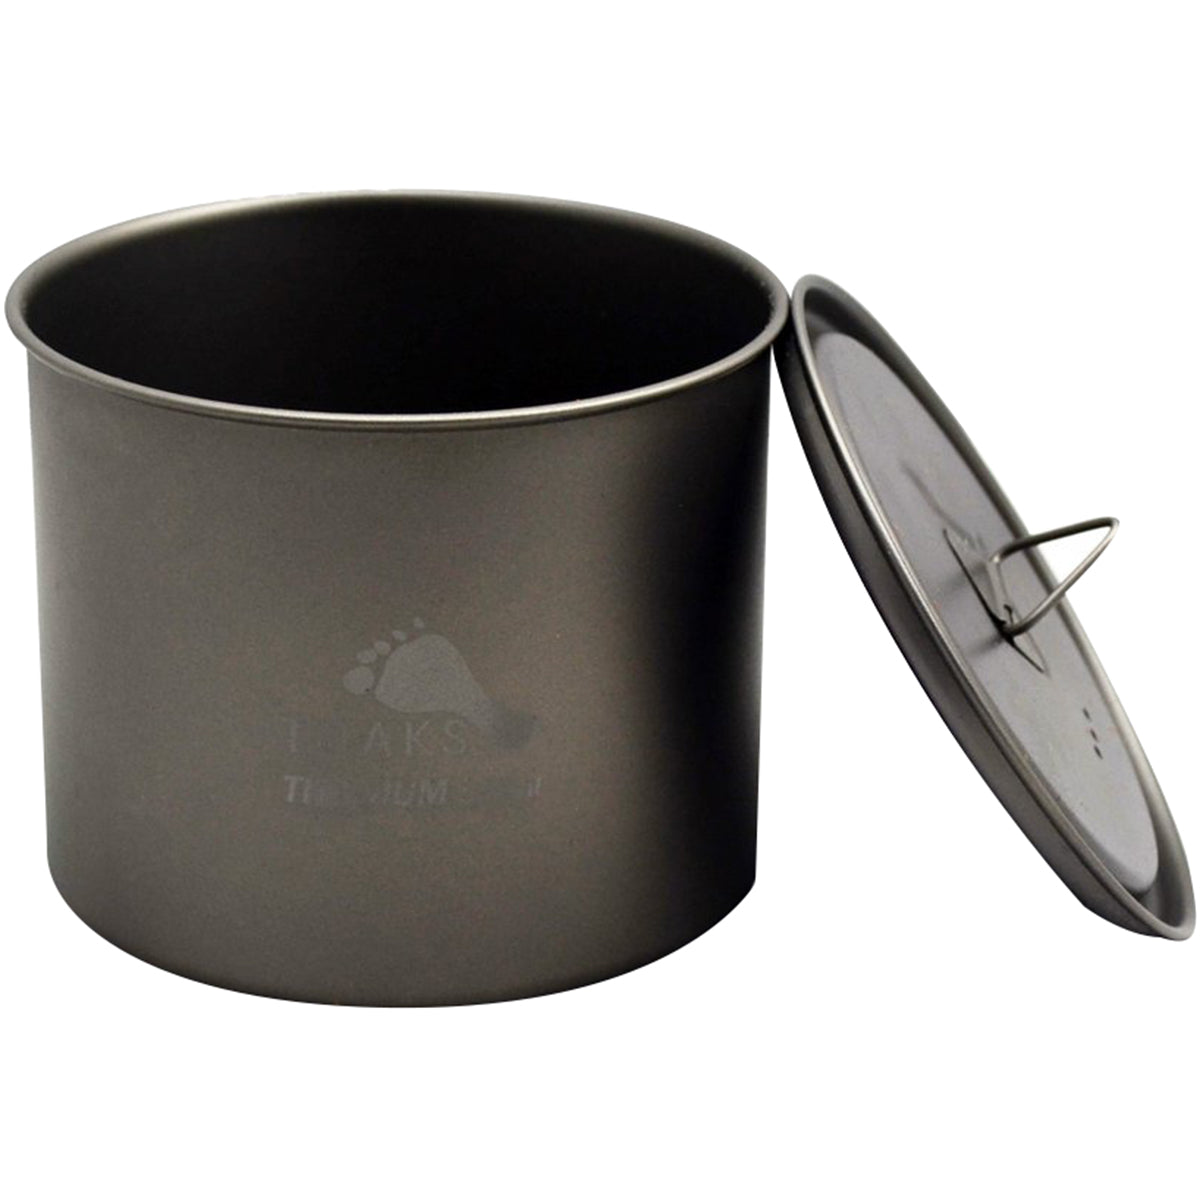 TOAKS Light Titanium 550ml Outdoor Camping Cook Pot without Handle POT-550-NH TOAKS